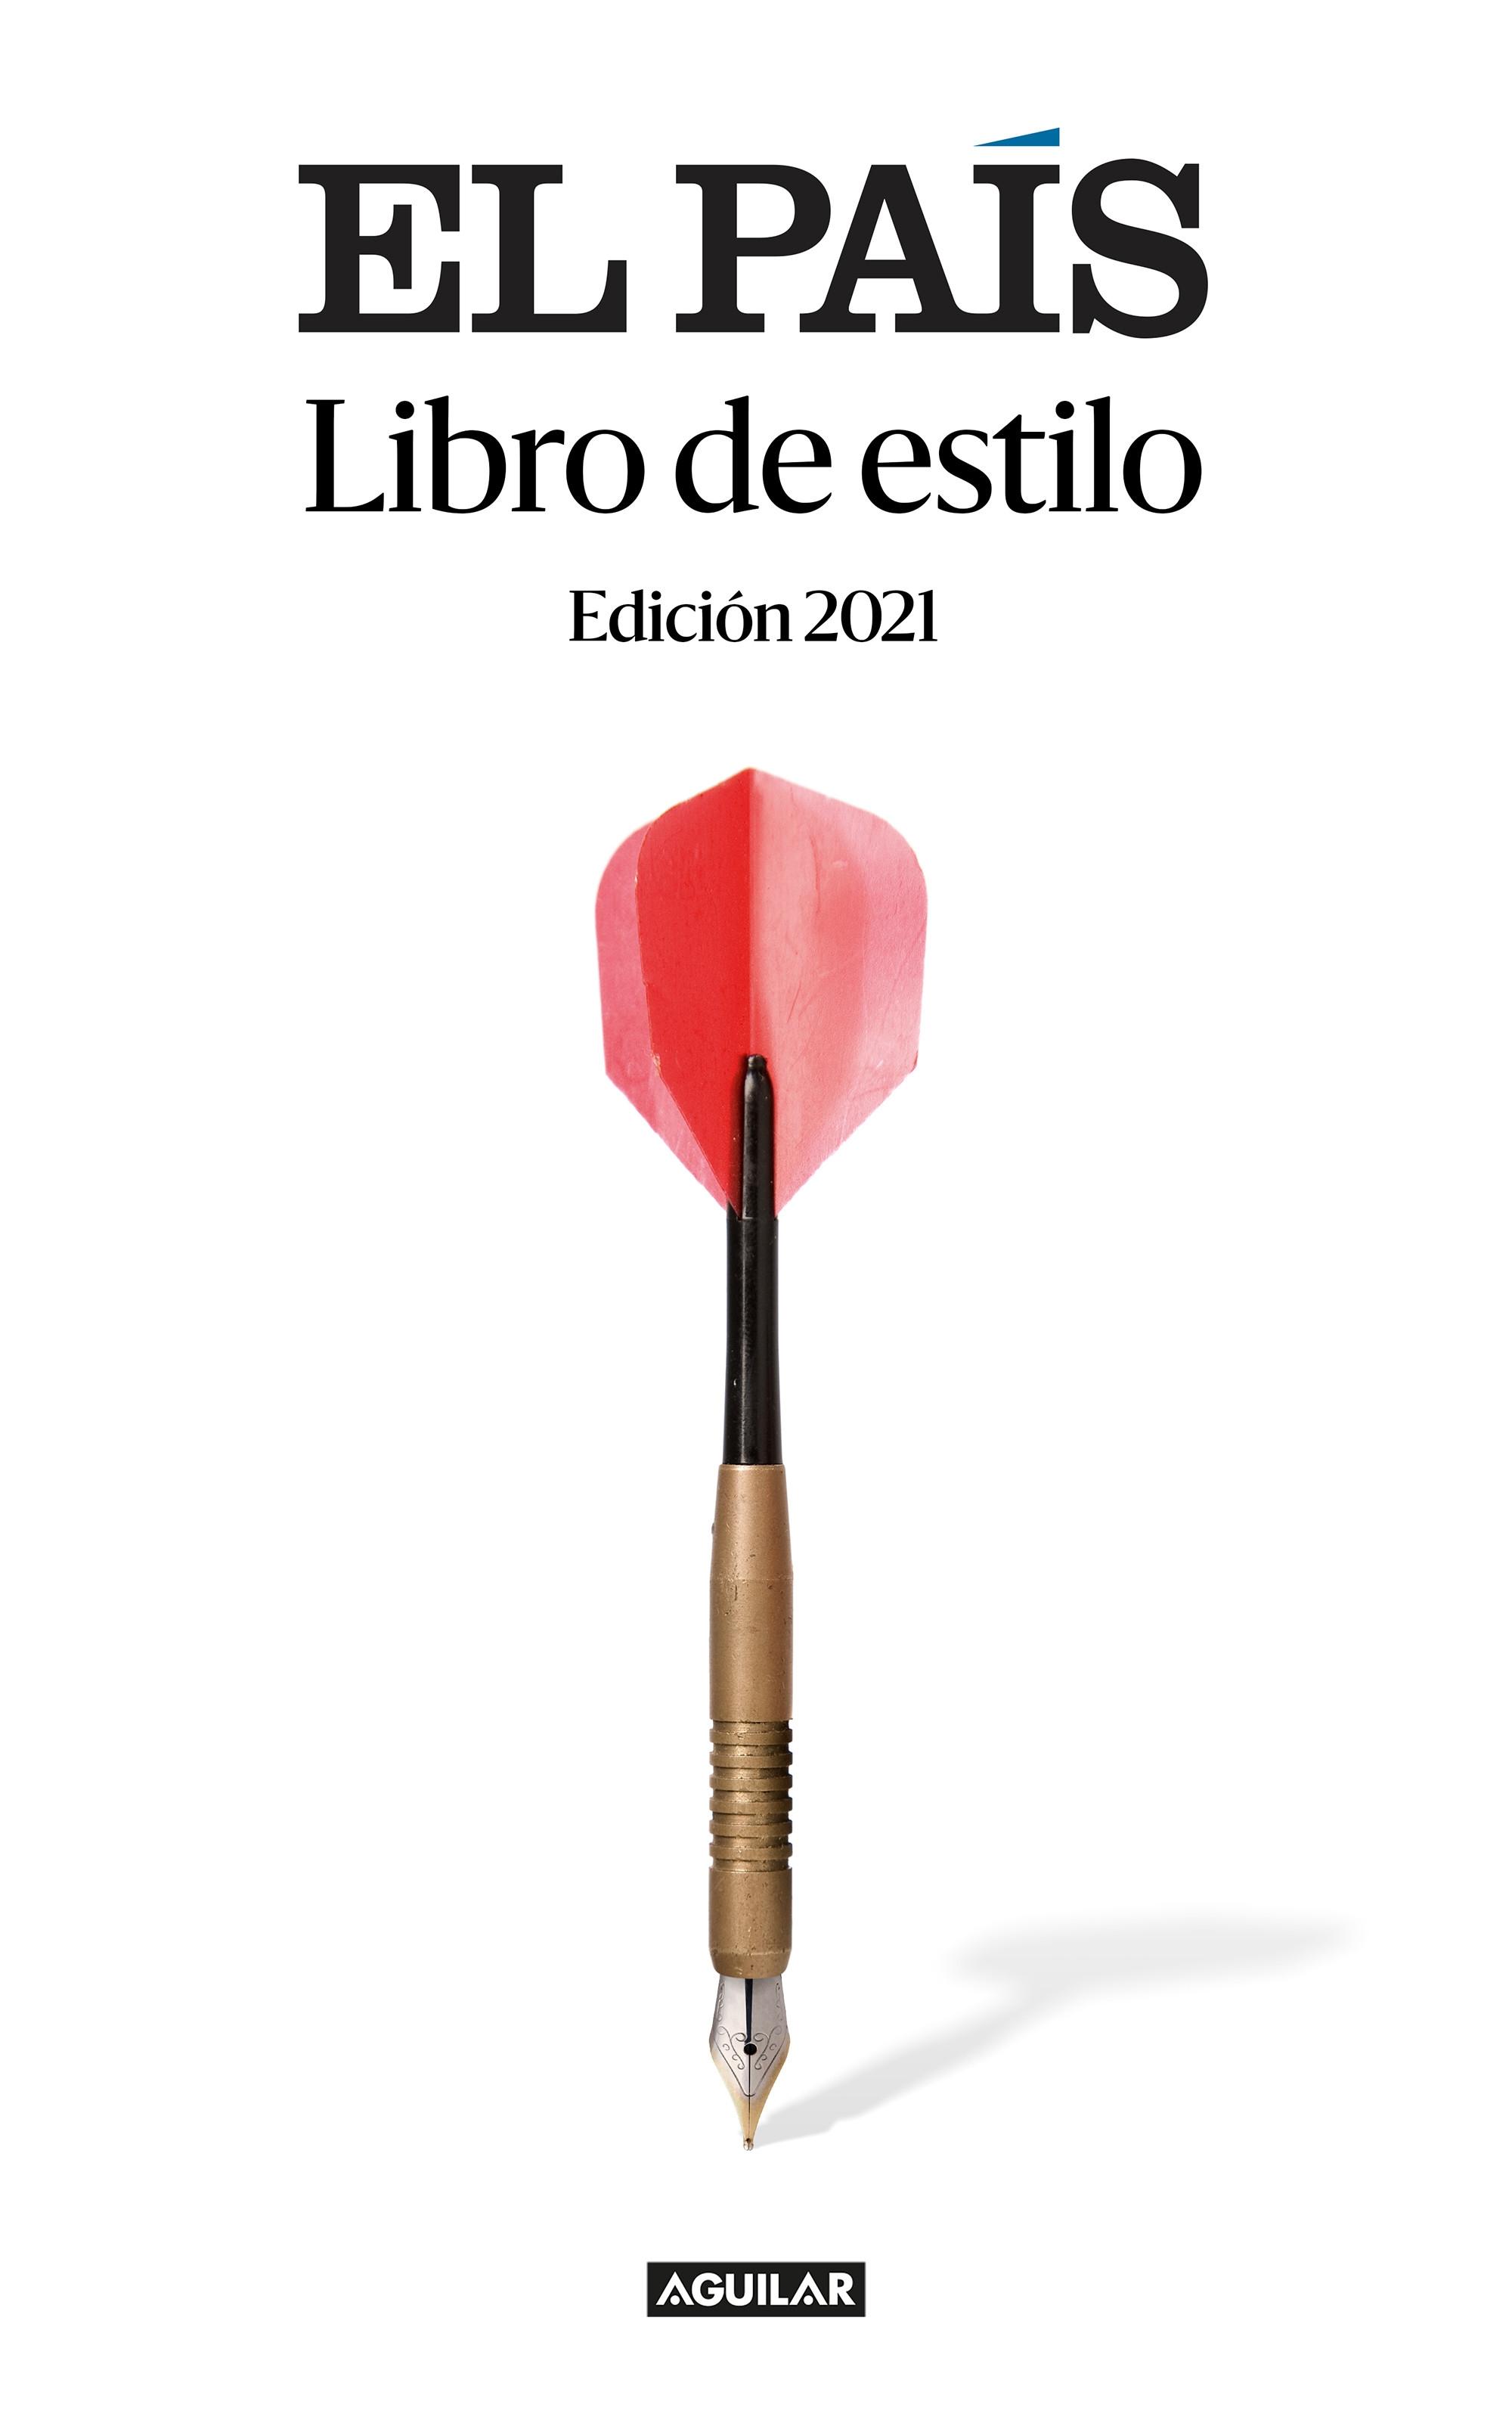 El País. Libro de estilo "(Edición 2021)". 